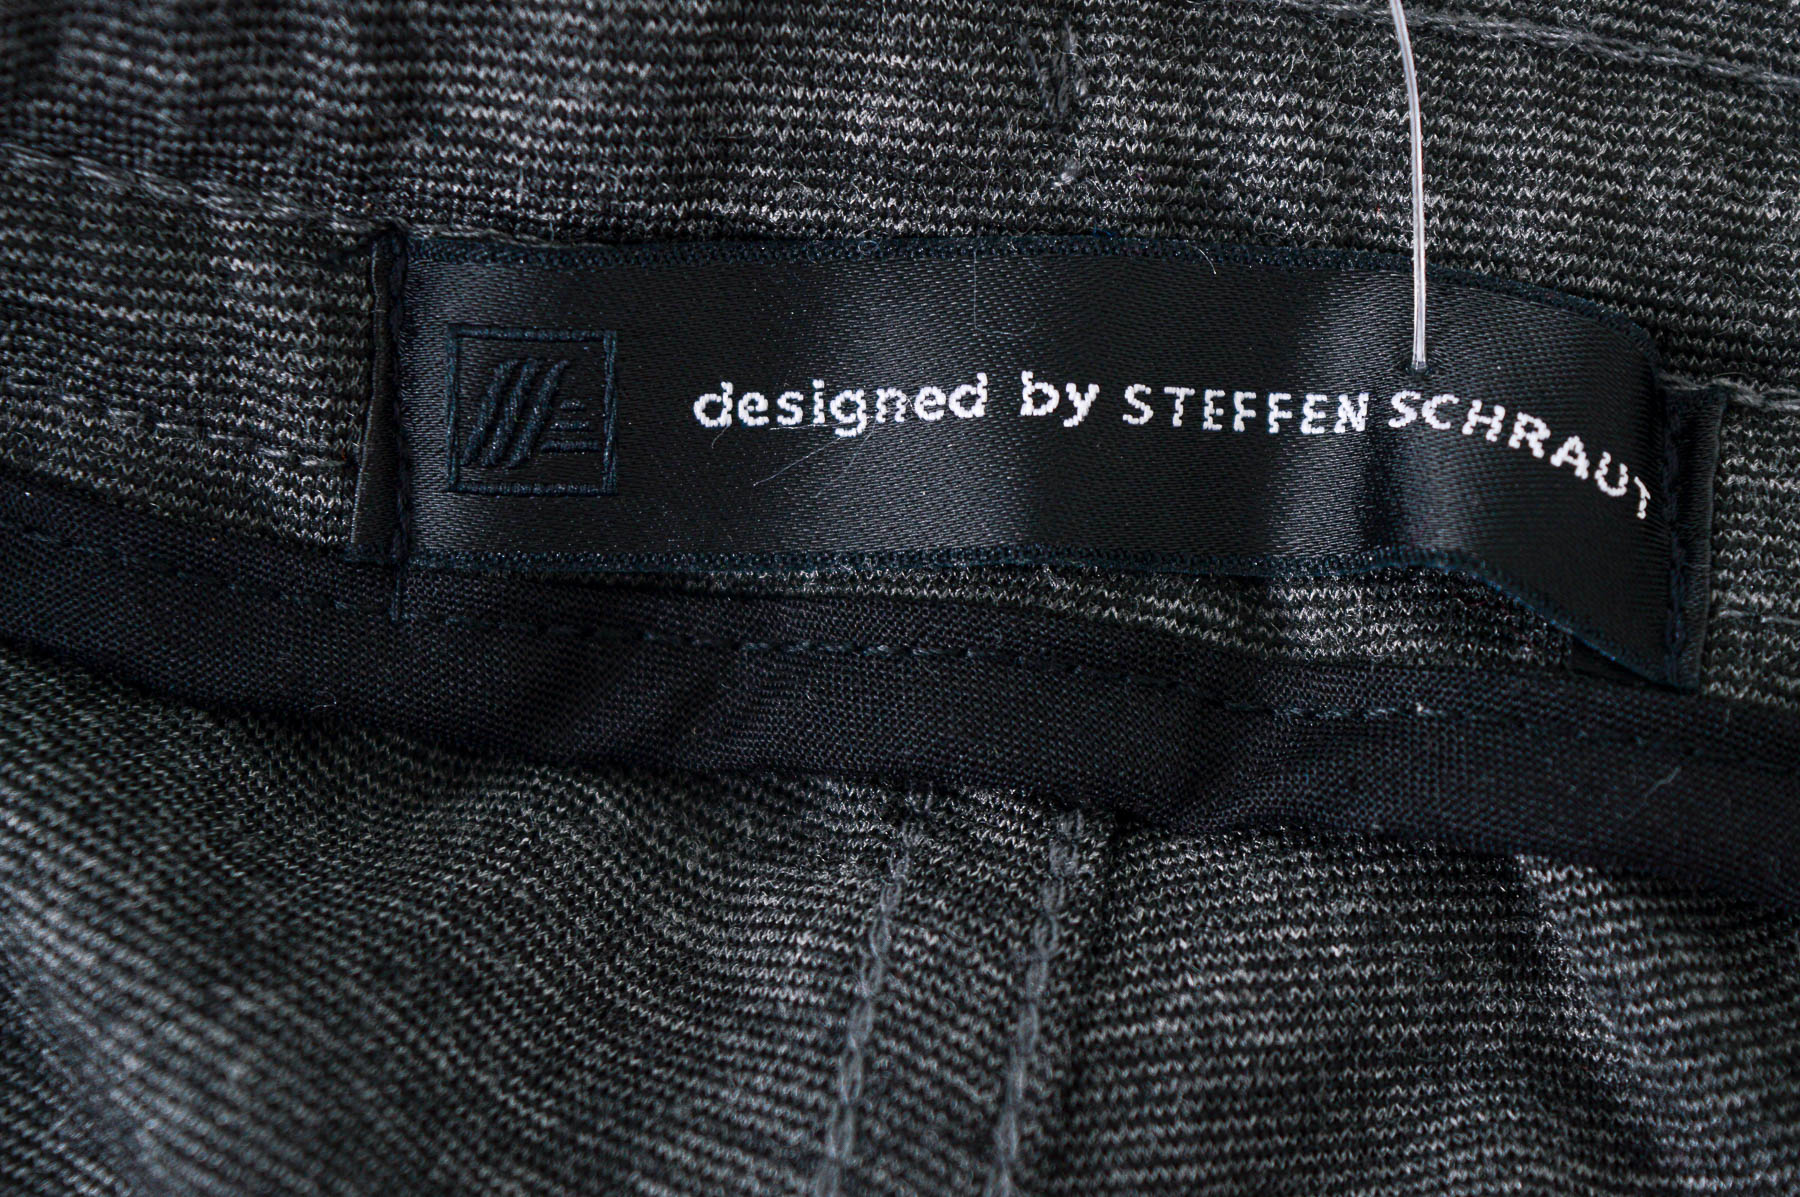 Men's trousers - designed by STEFFEN SCHRAUT - 2